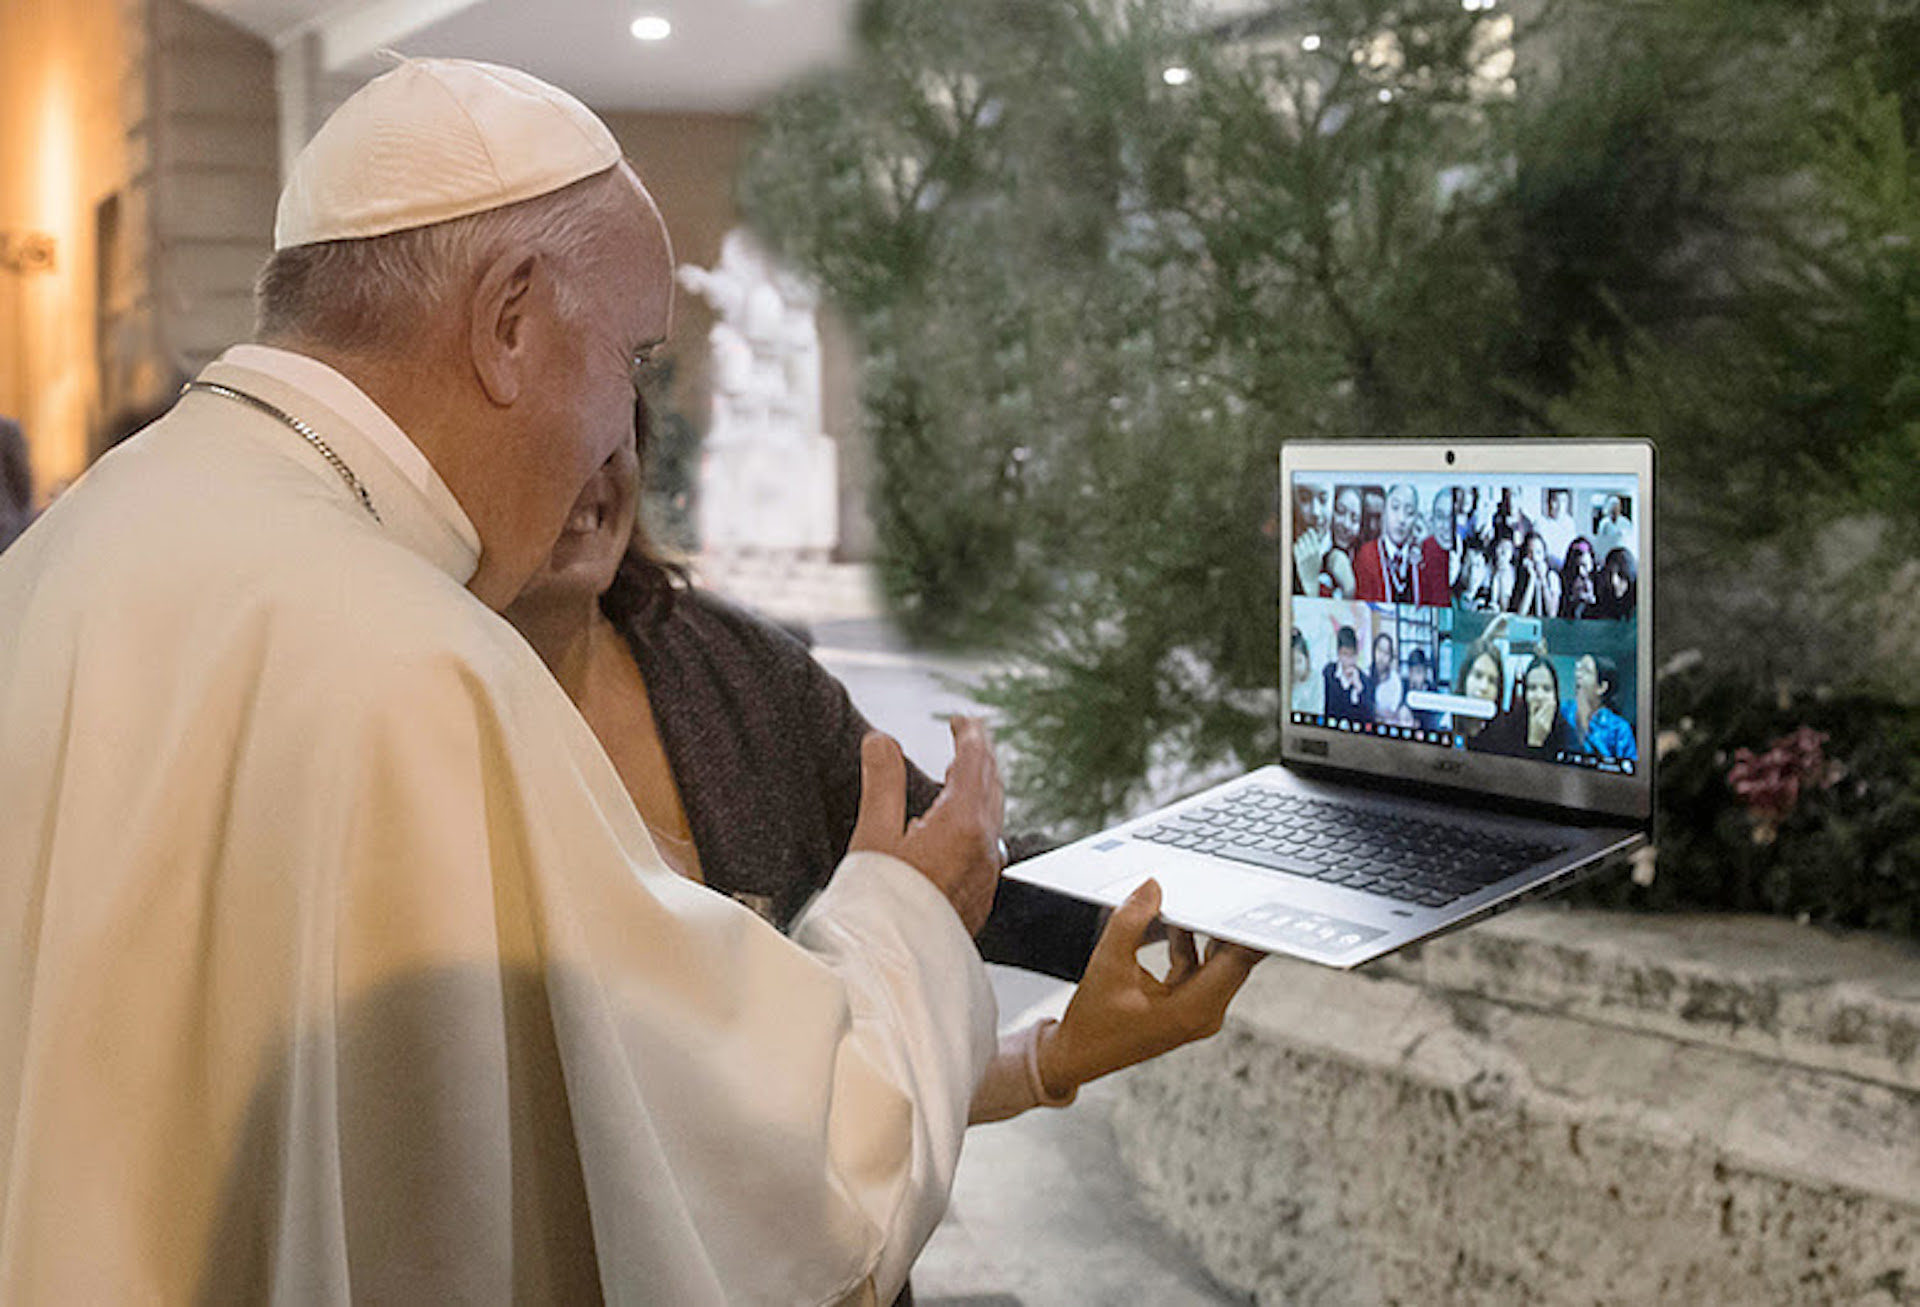 Lors de cette inauguration, le pape dialoguera en vidéoconférence avec les jeunes | © scholas occurrentes